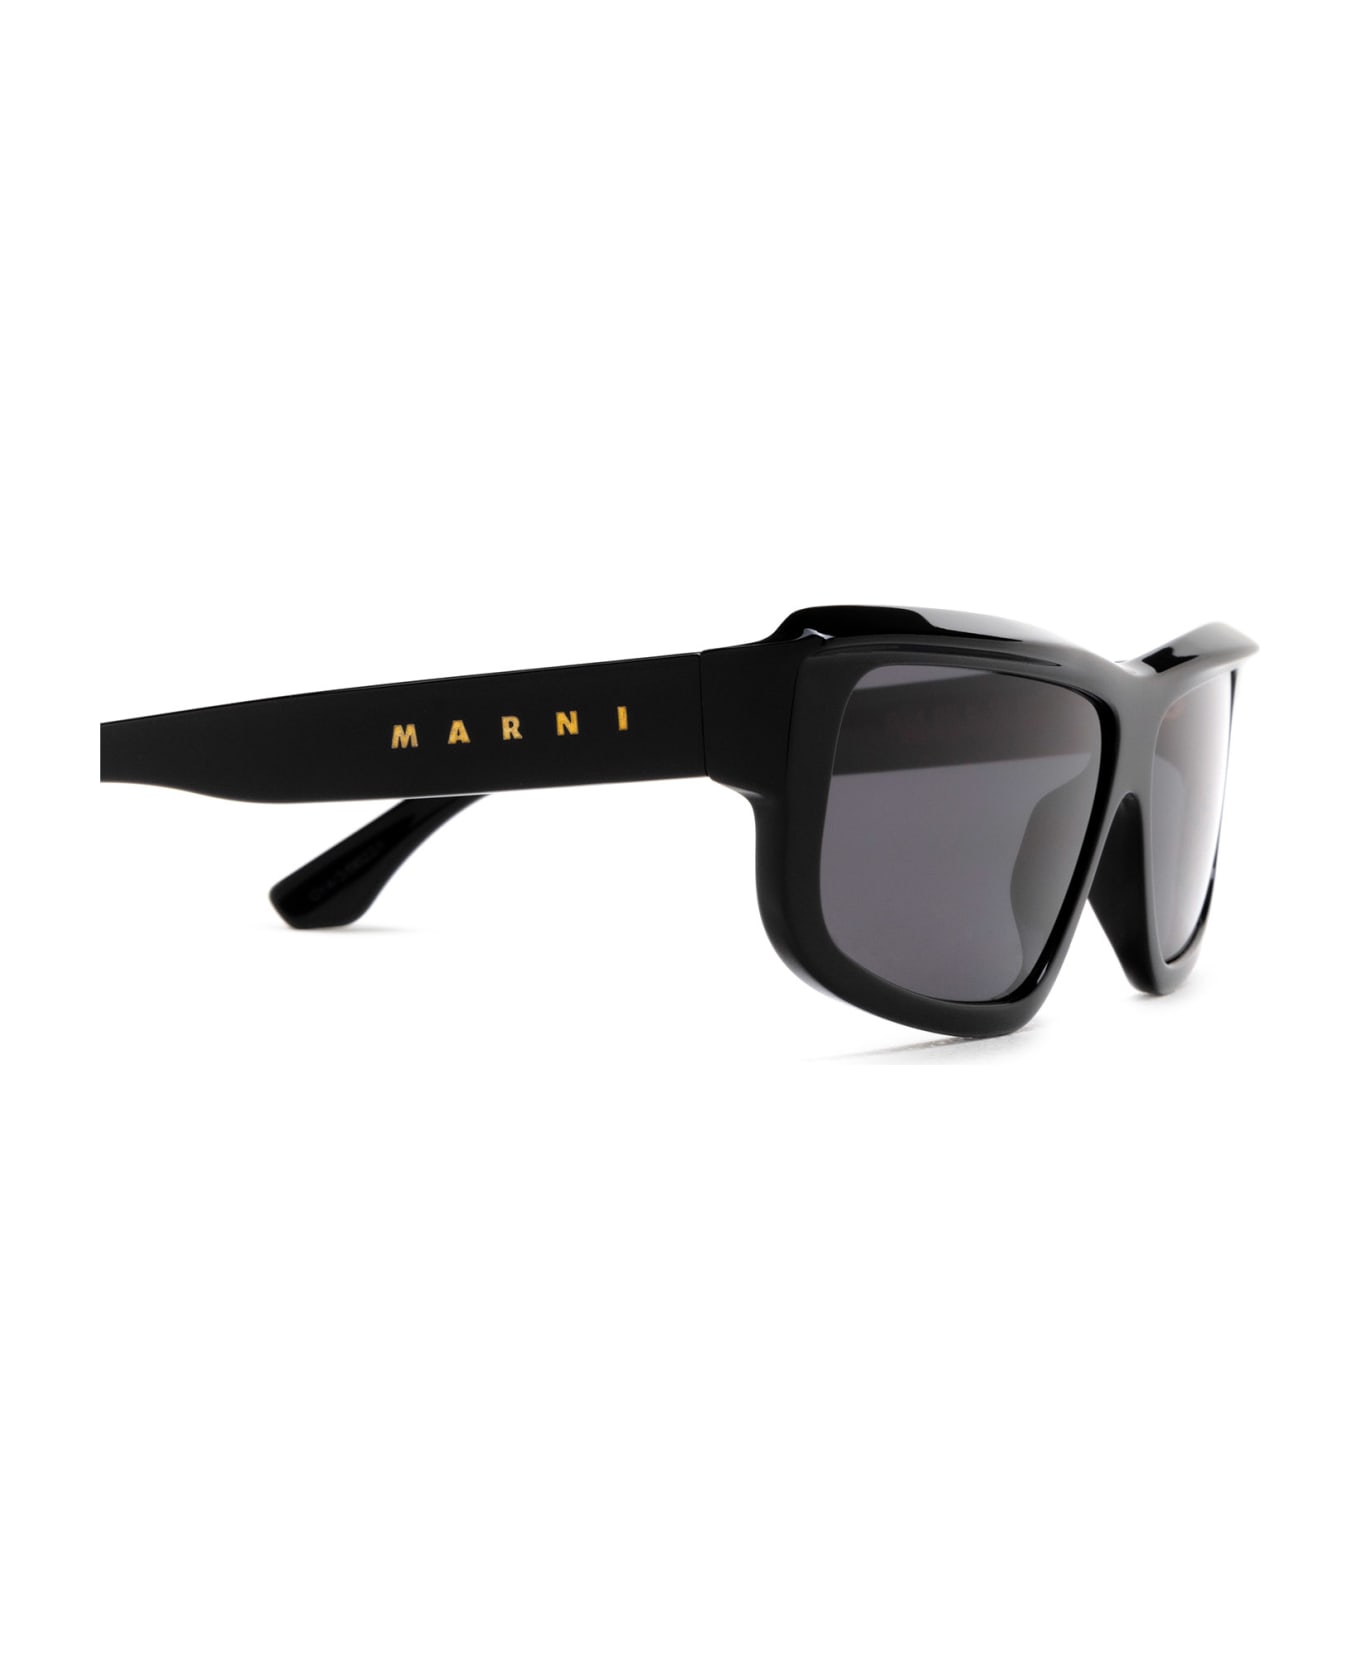 Marni Eyewear Annapuma Circuit Black Sunglasses - Black